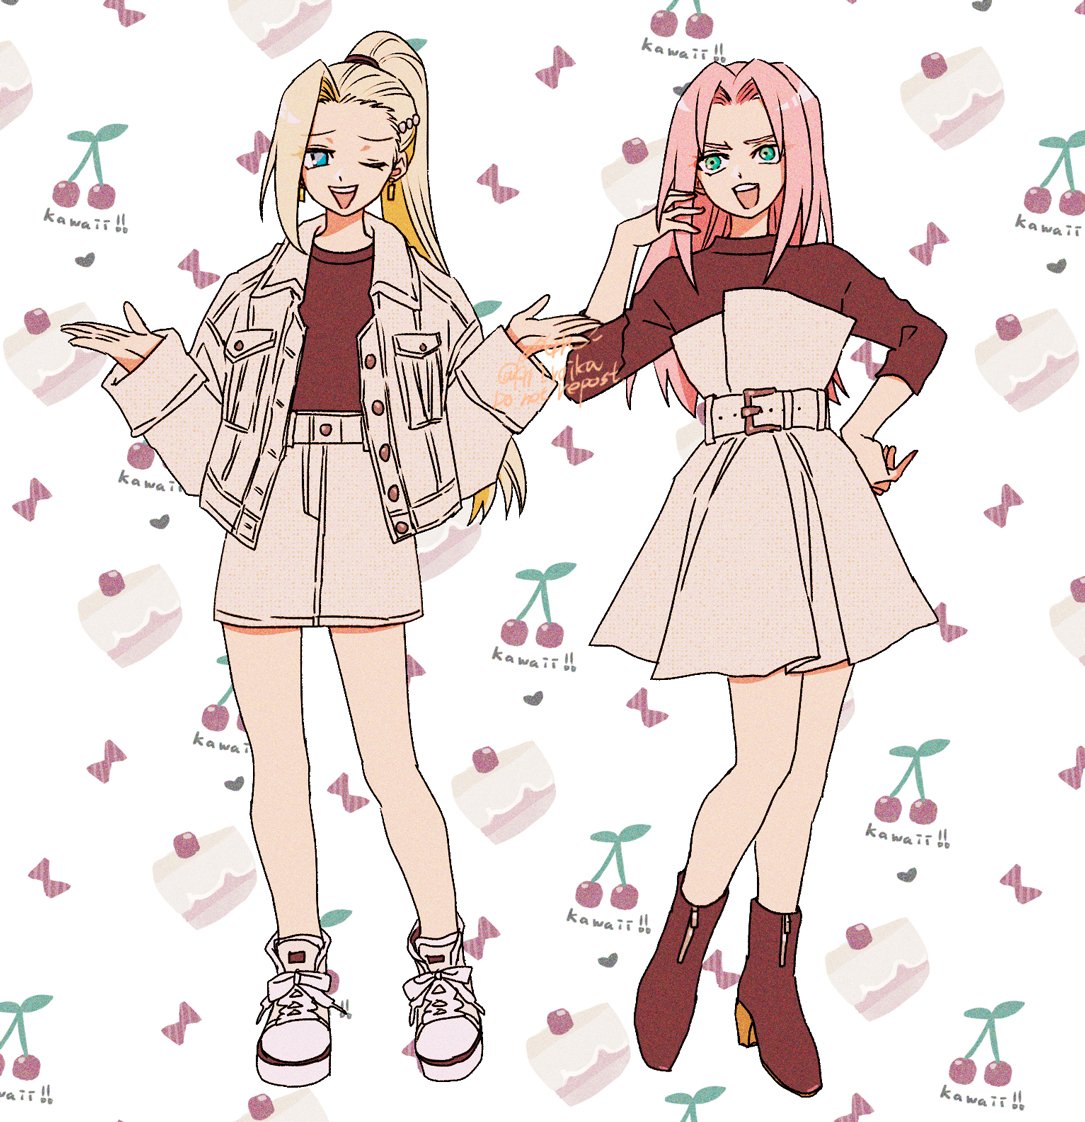 haruno sakura multiple girls 2girls pink hair blonde hair skirt jacket one eye closed  illustration images